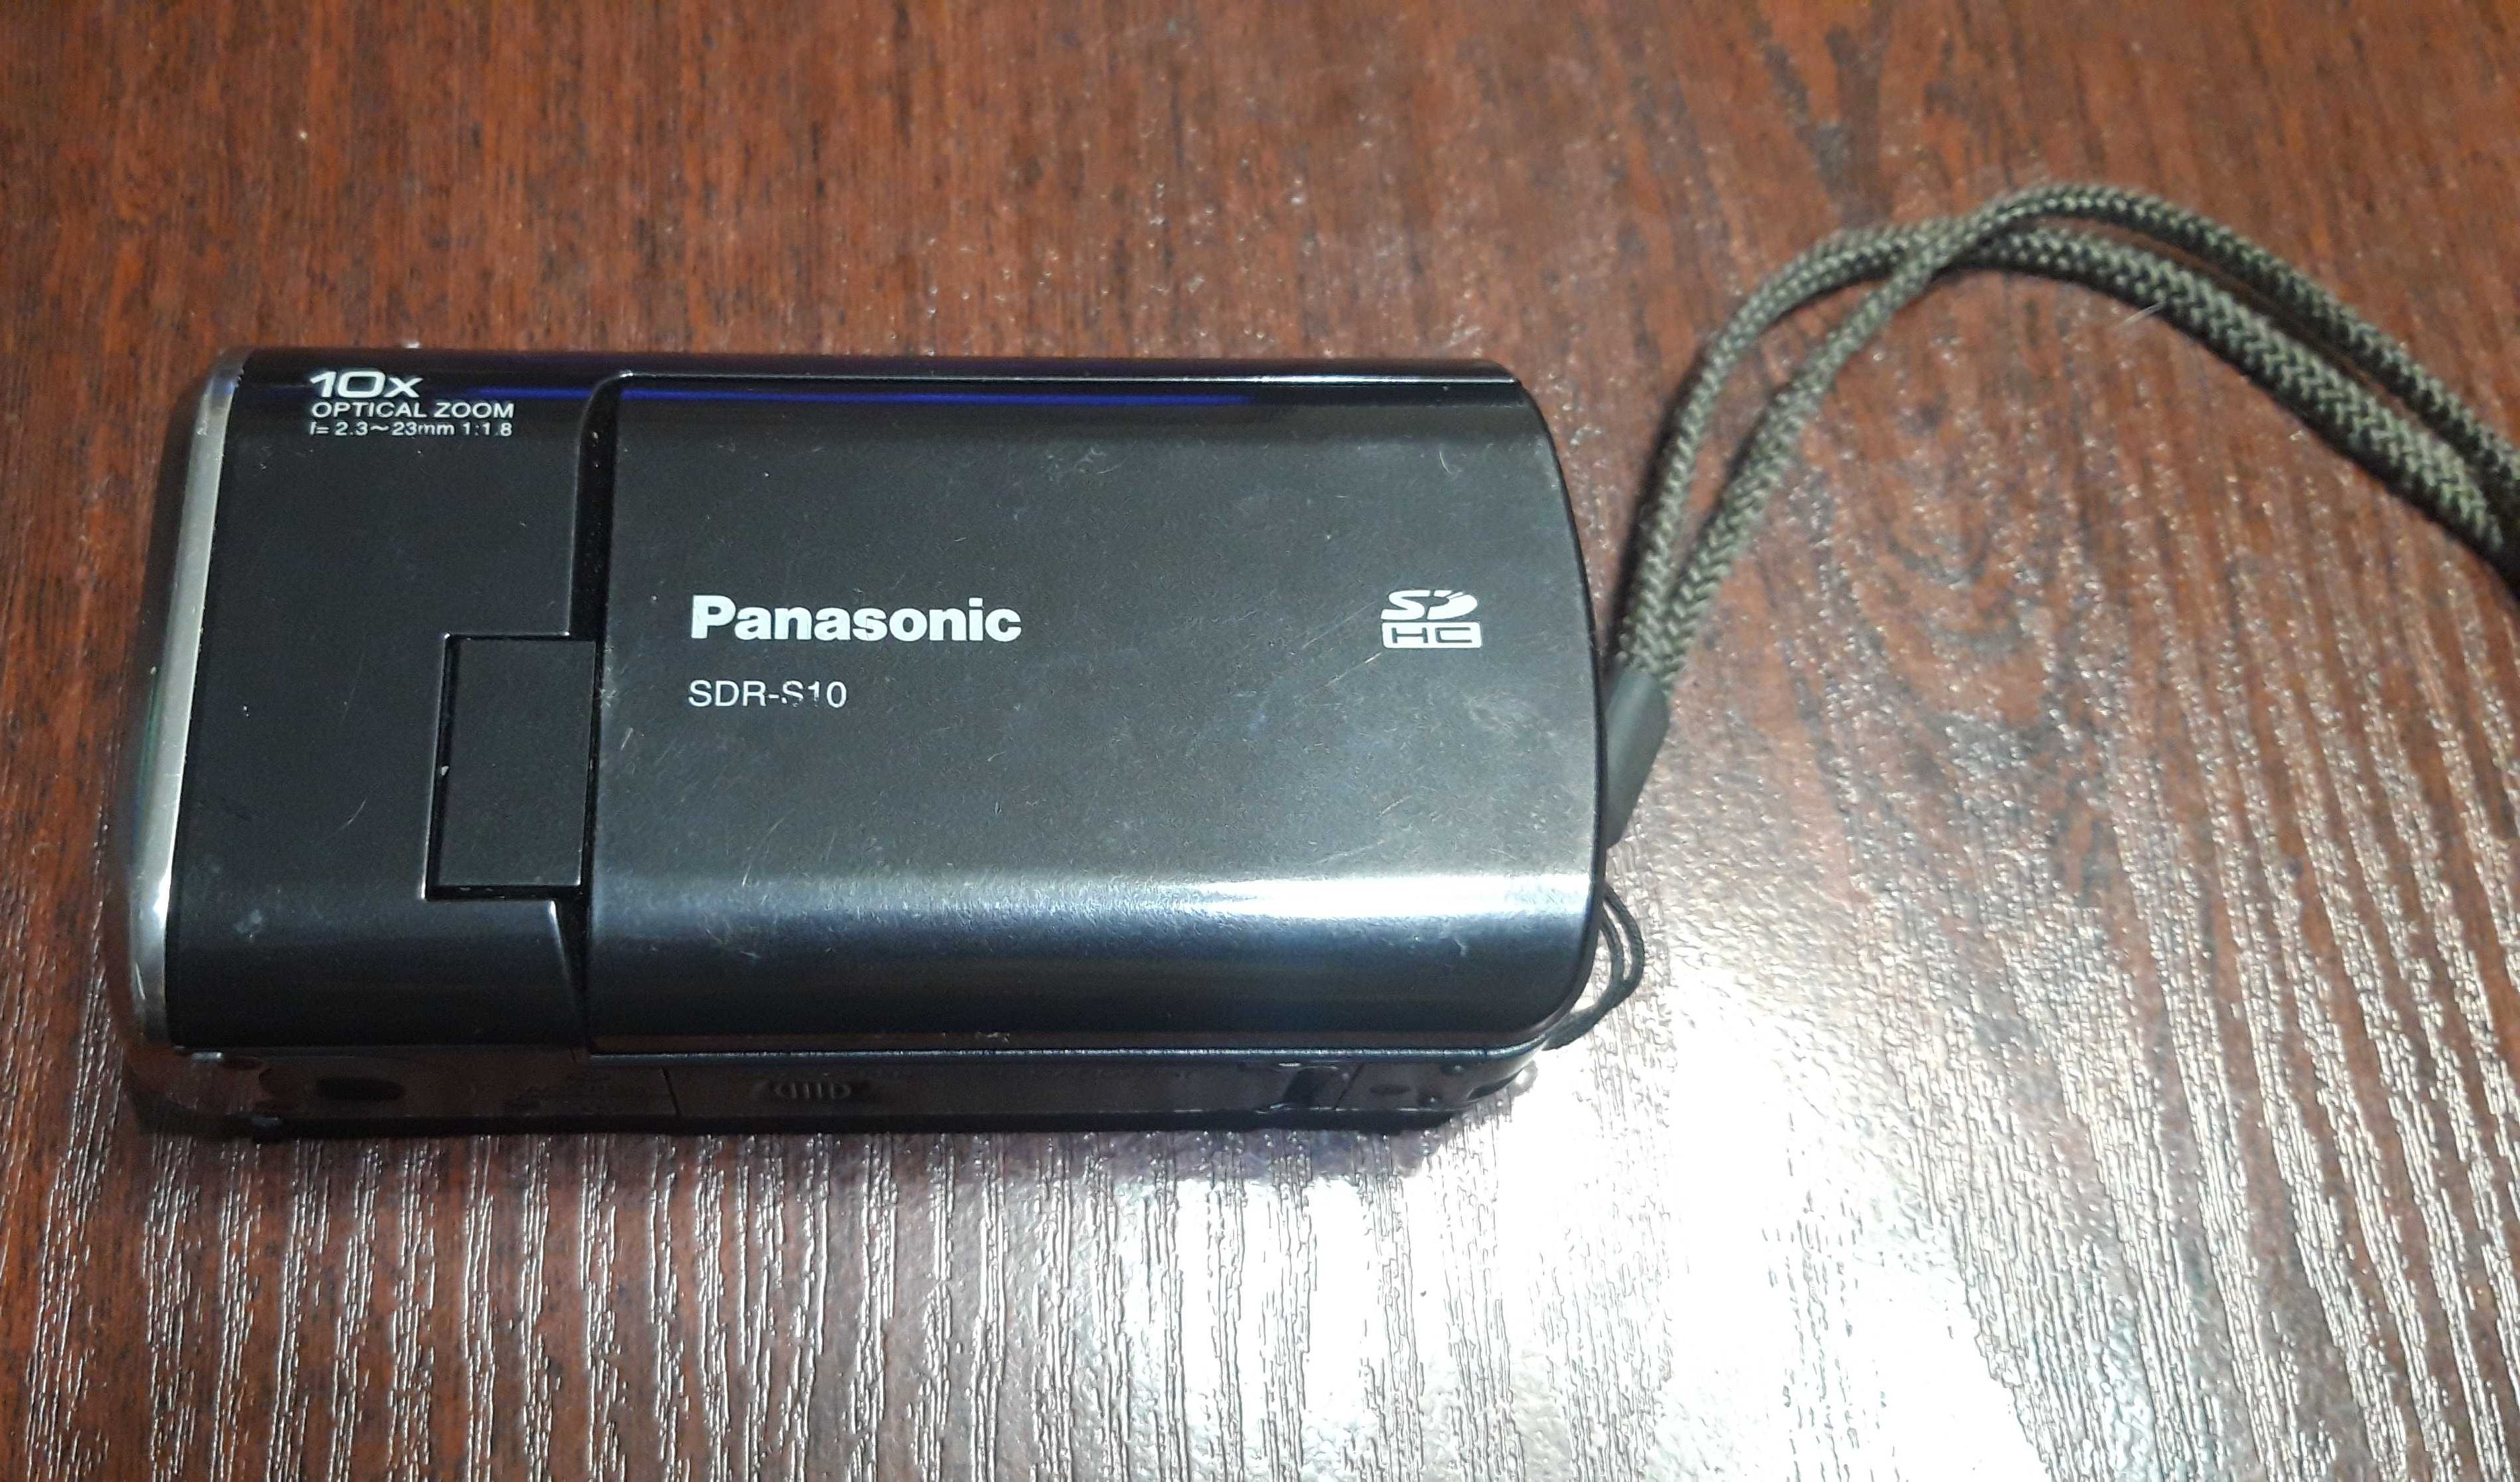 Вiдеокамера PANASONIC SDR-S10. Made in Japan.